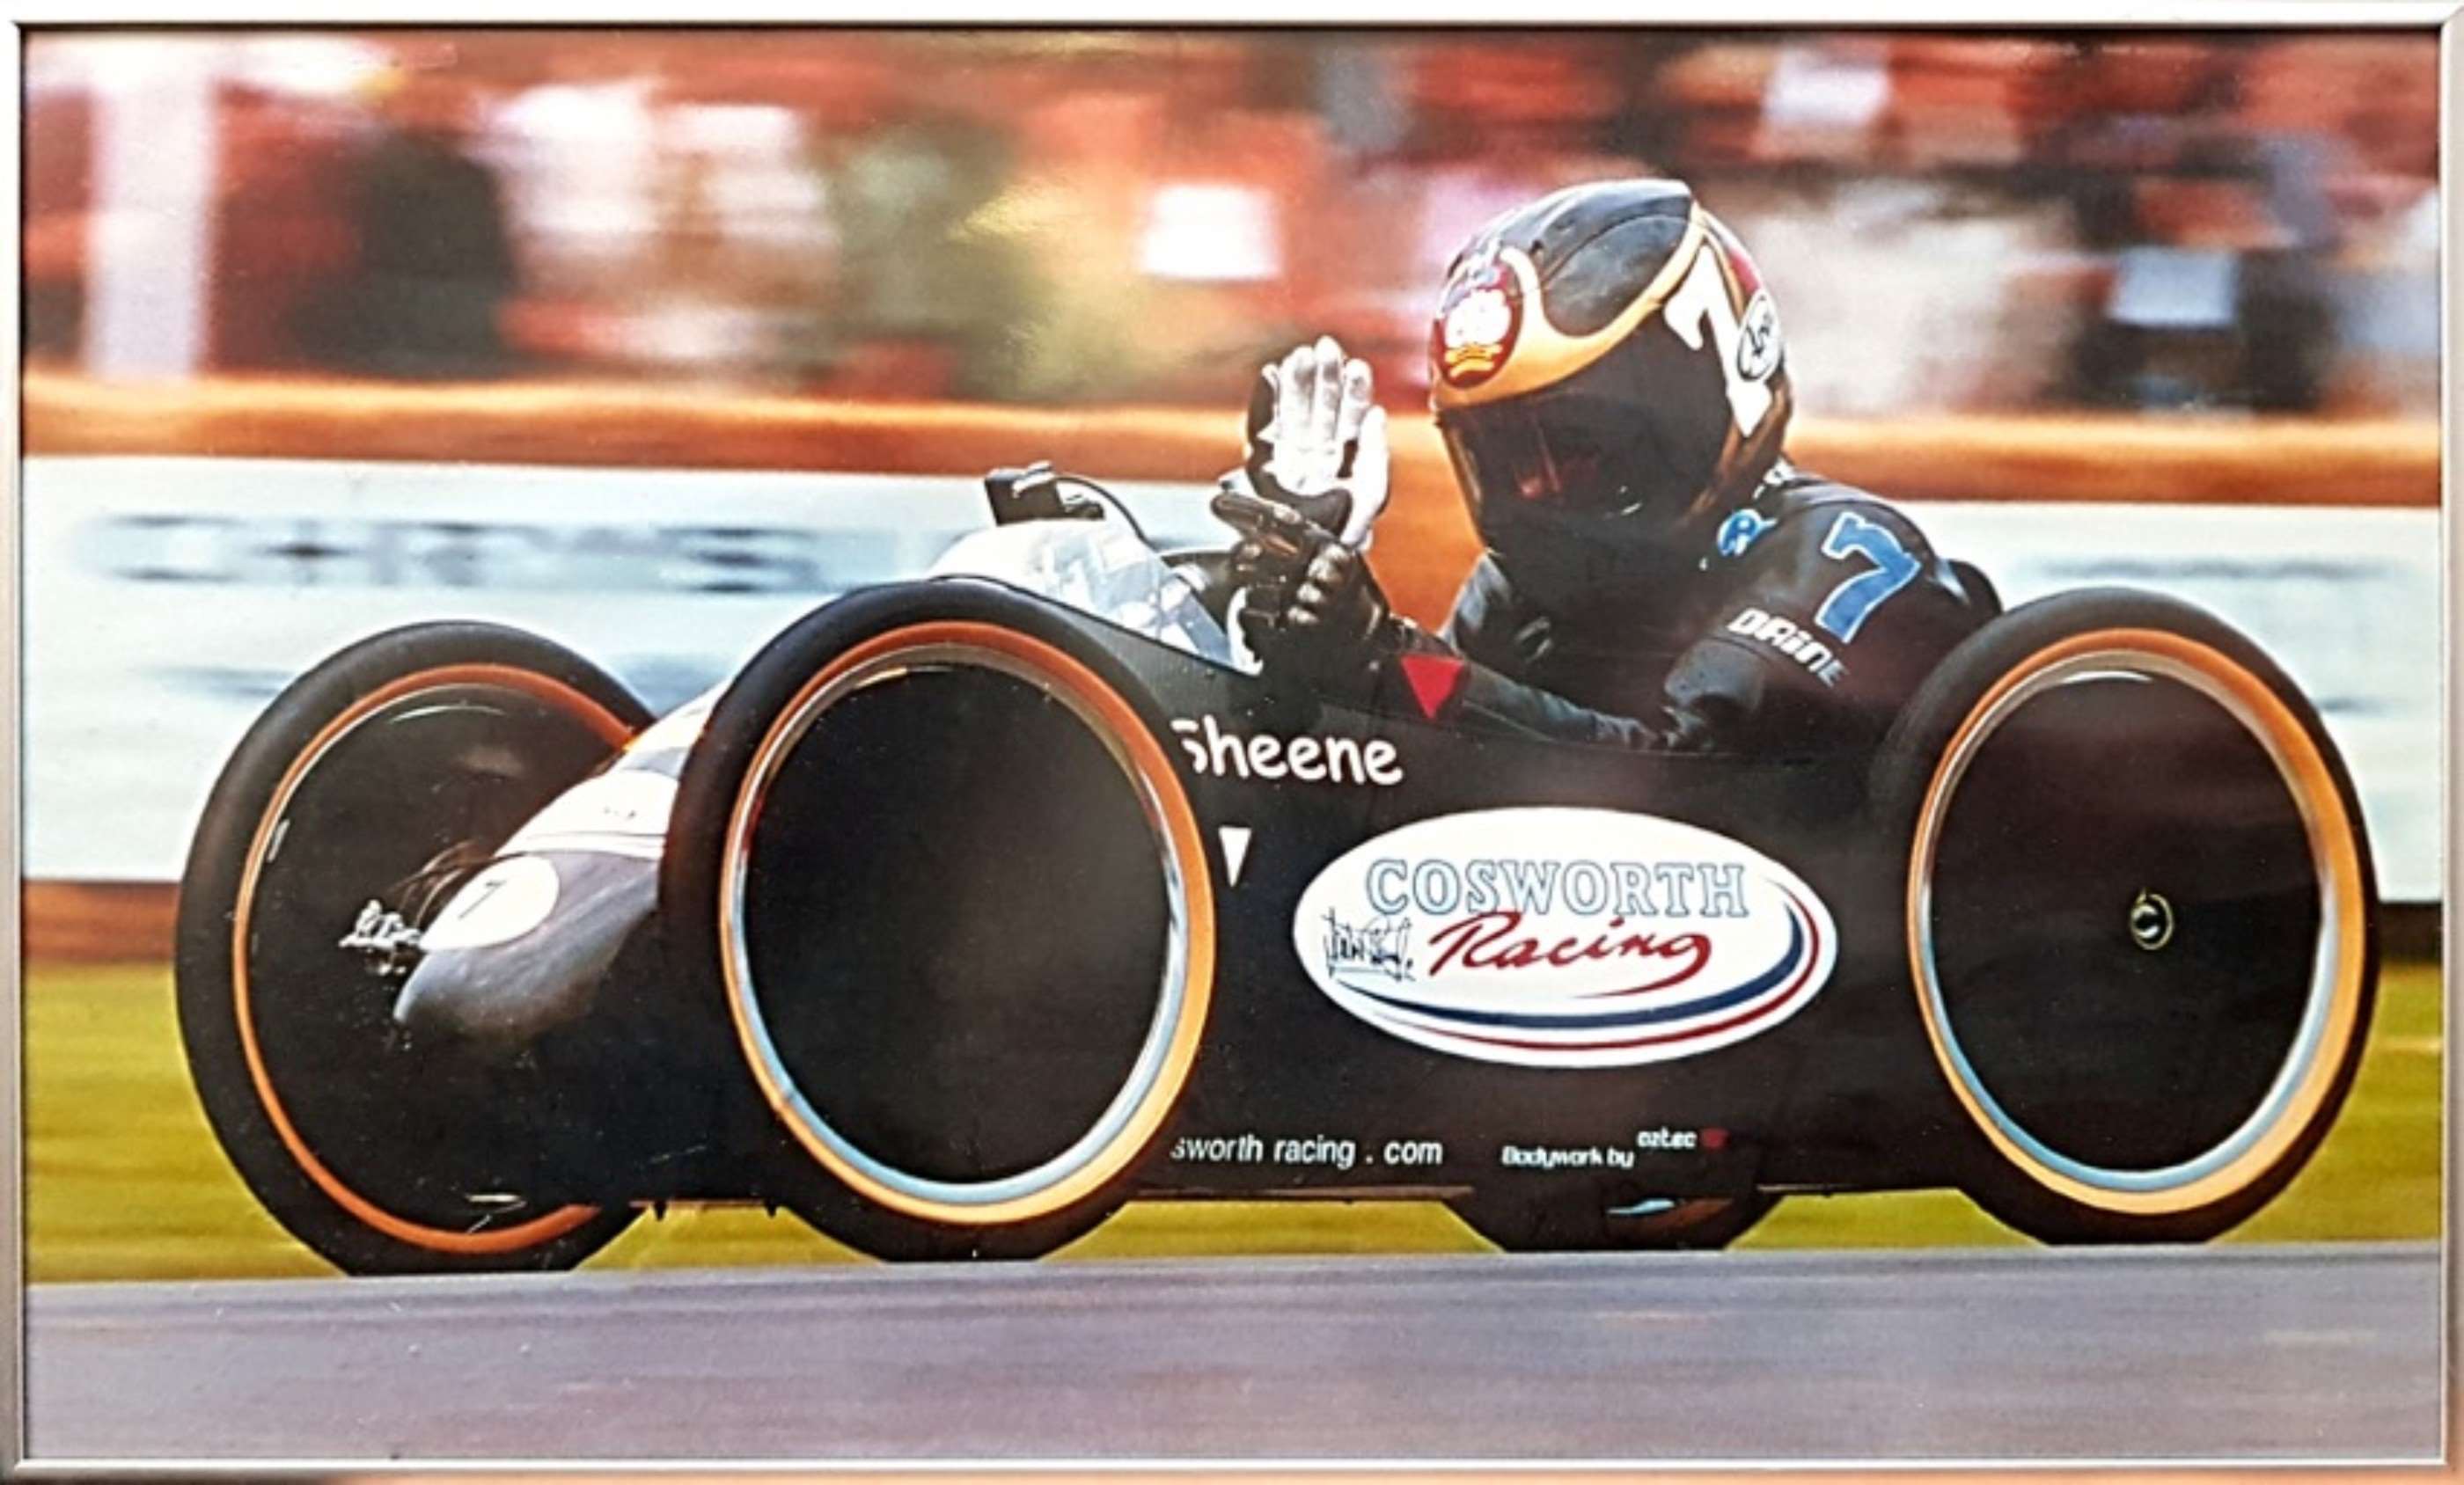 barry-sheene-racer-poster.jpg